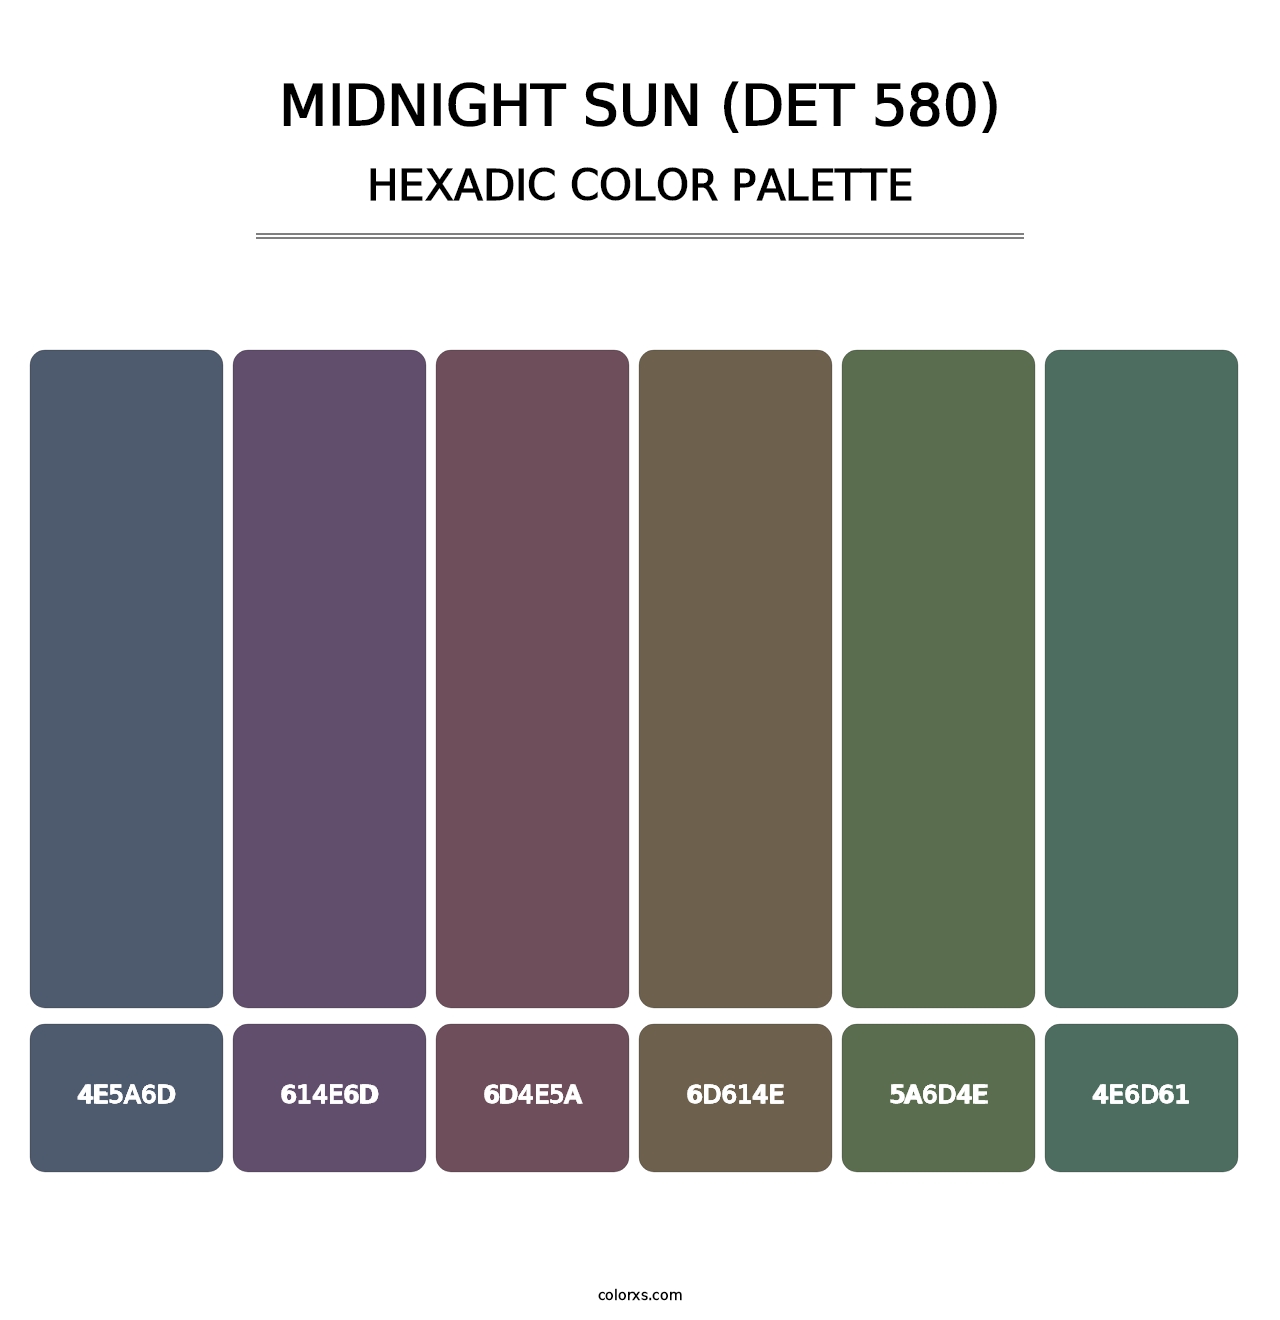 Midnight Sun (DET 580) - Hexadic Color Palette